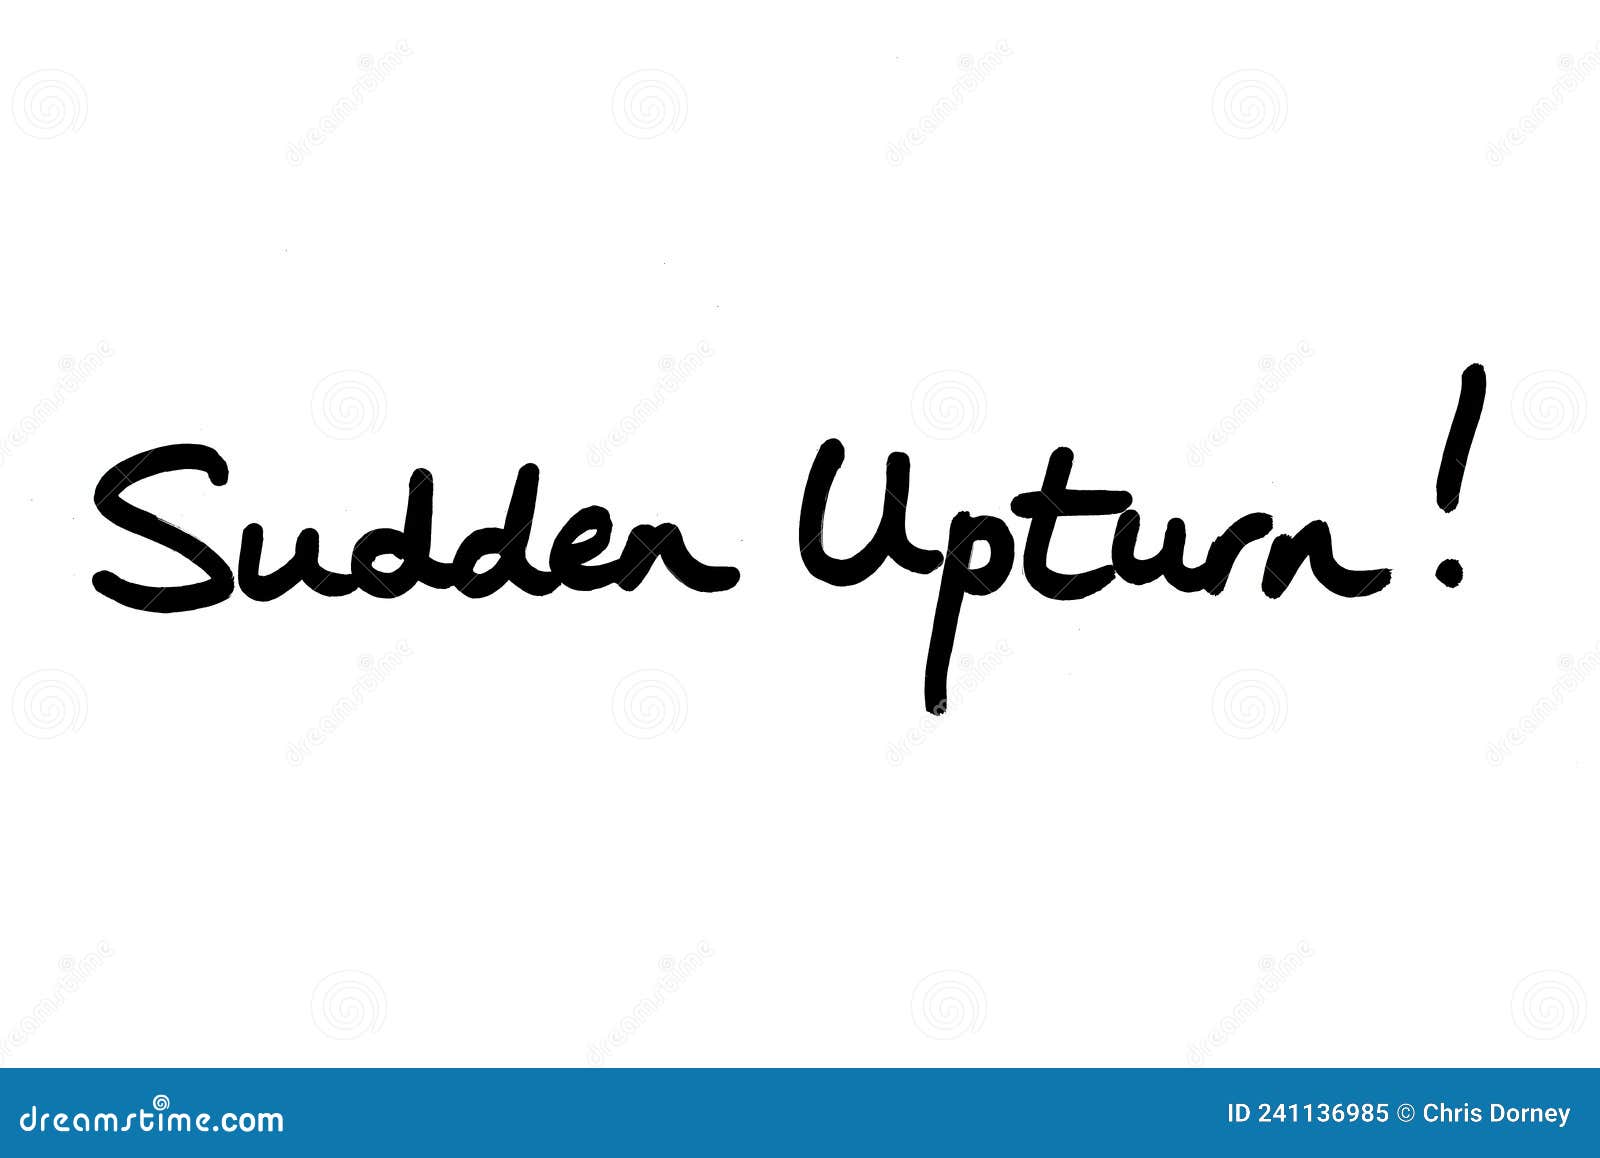 sudden upturn